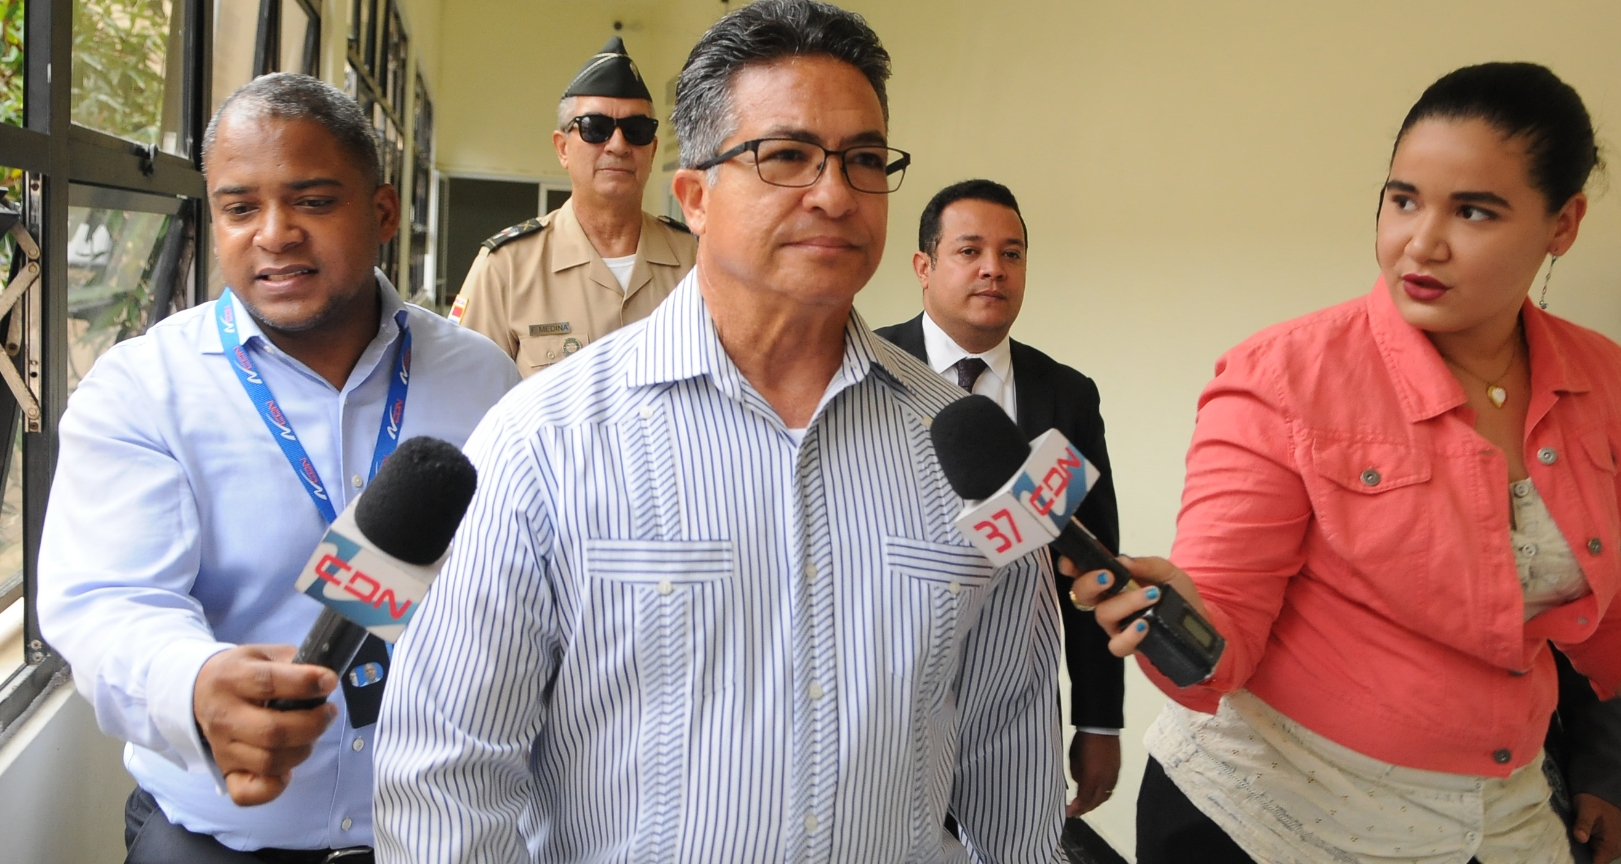  Procuraduría interrogará este jueves a exsecretario Fuerzas Armadas Peña Antonio por caso Tucano